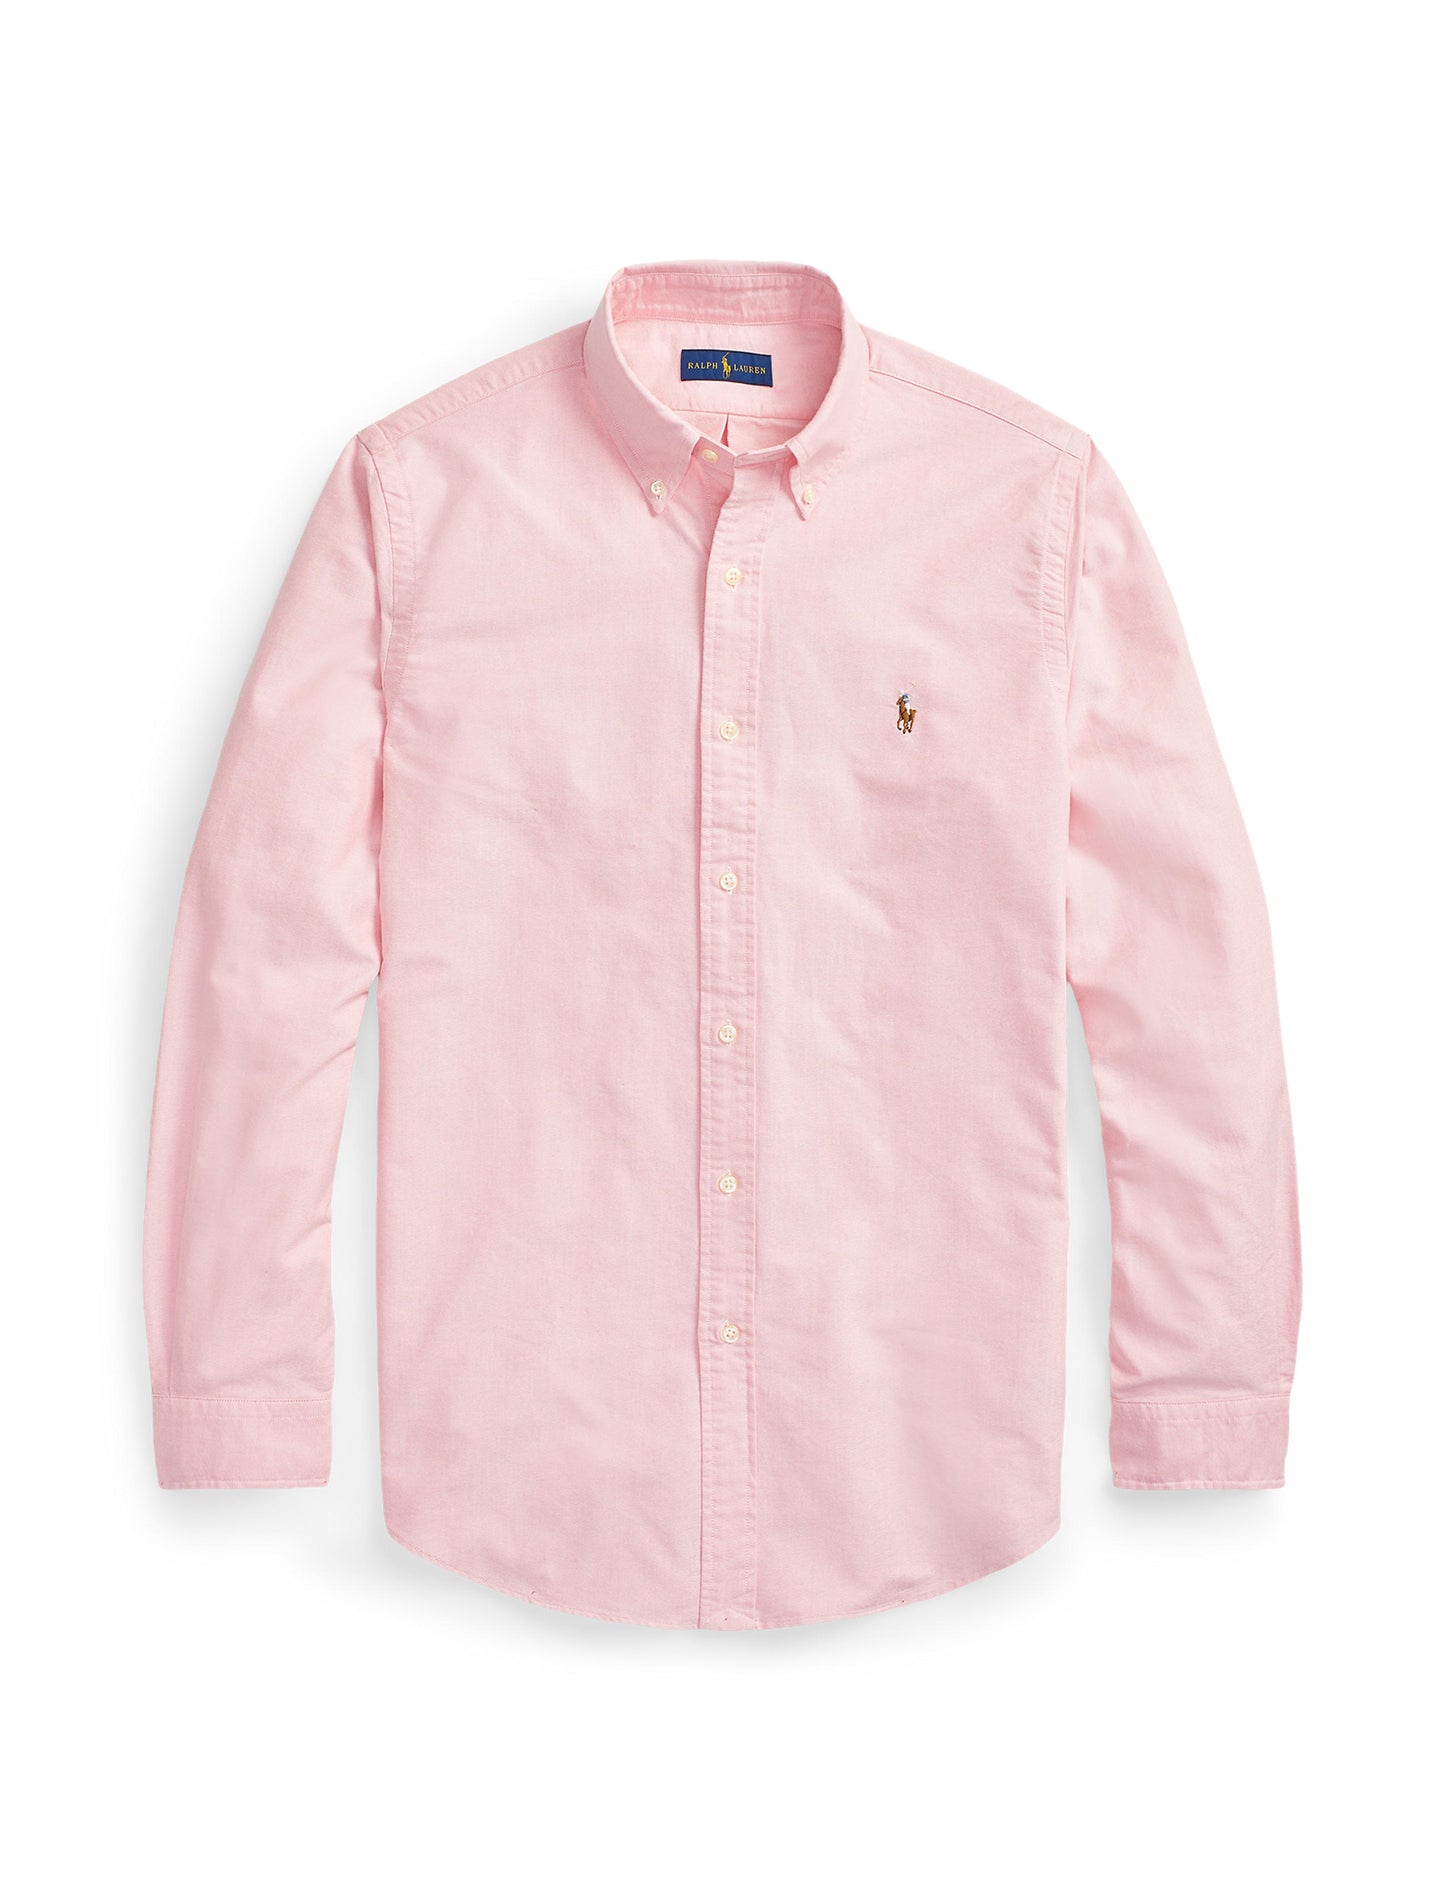 Polo Ralph Lauren Custom Fit Oxford Shirt Pink